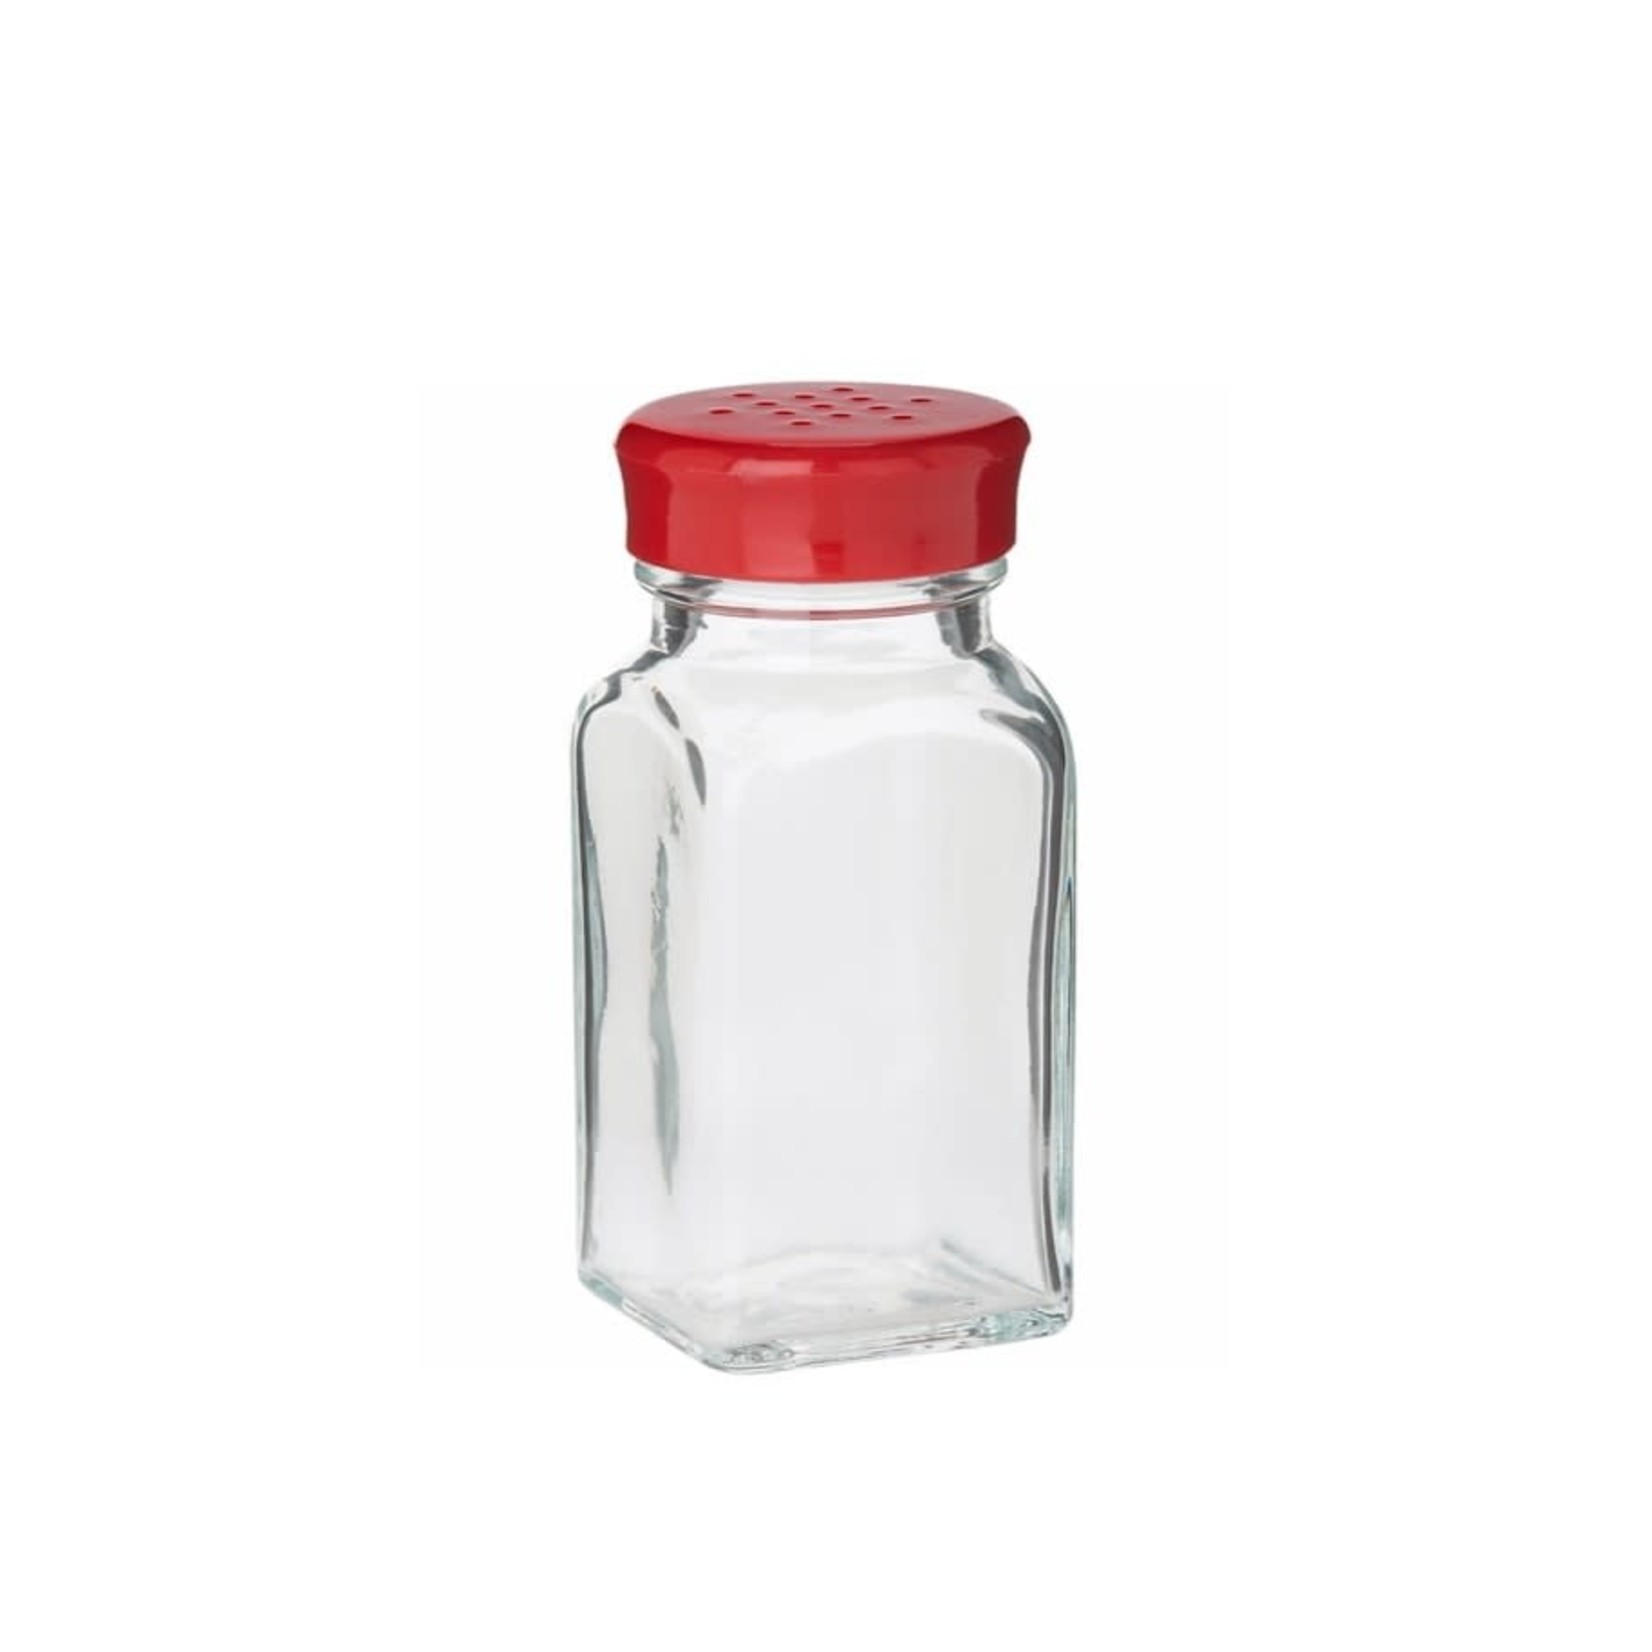 TRUDEAU TRUDEAU Wink Salt/Pepper Shaker